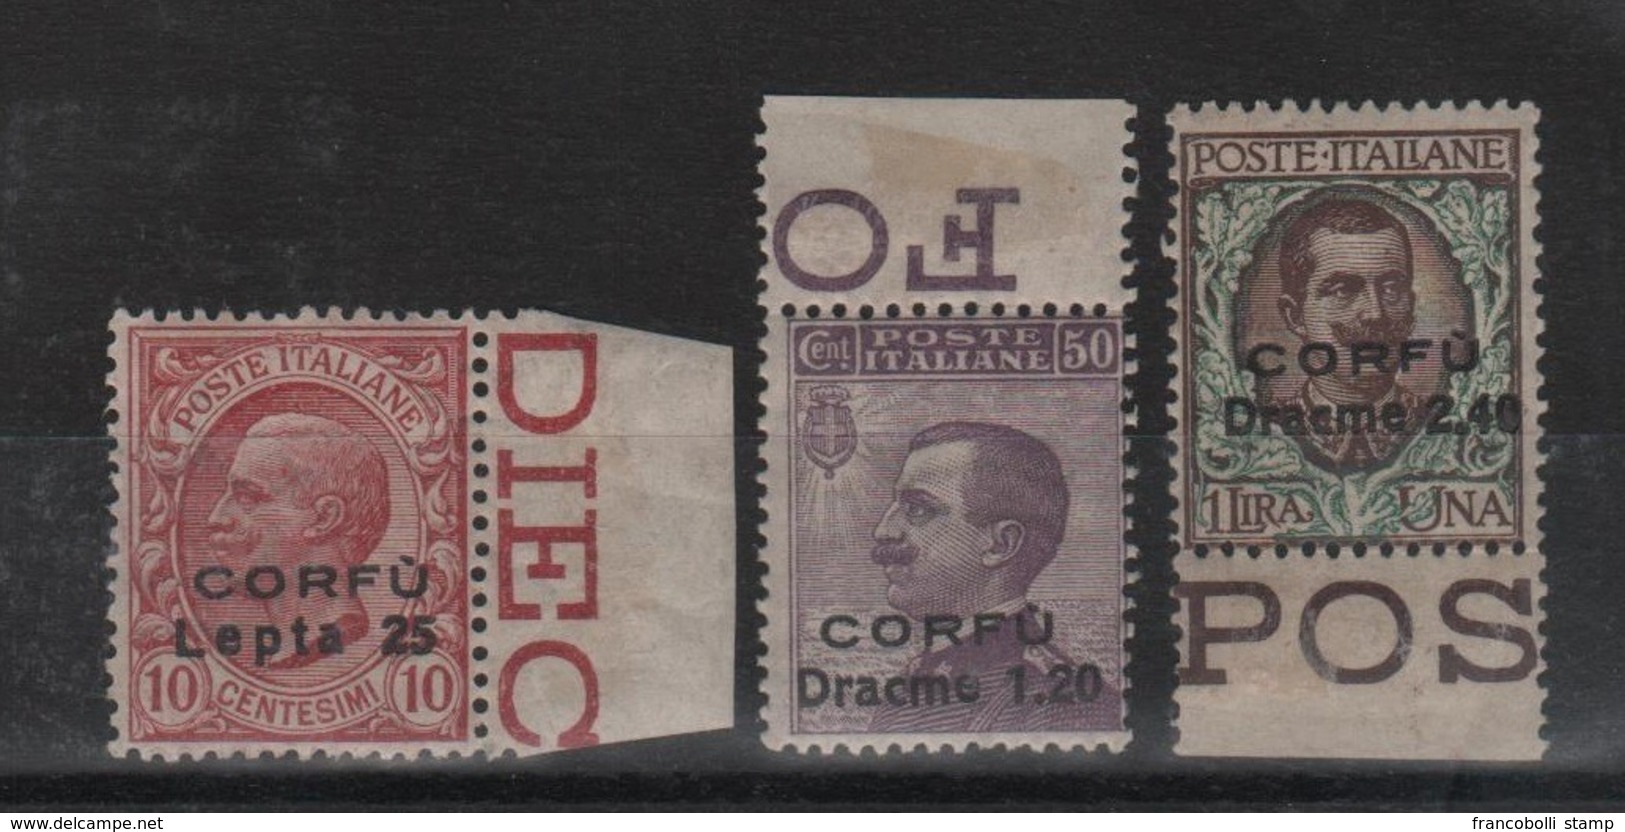 1923 Occupazione Corfù Francobolli D'Italia Sopr. CORFU Serie Cpl MNH B.F. - Corfou